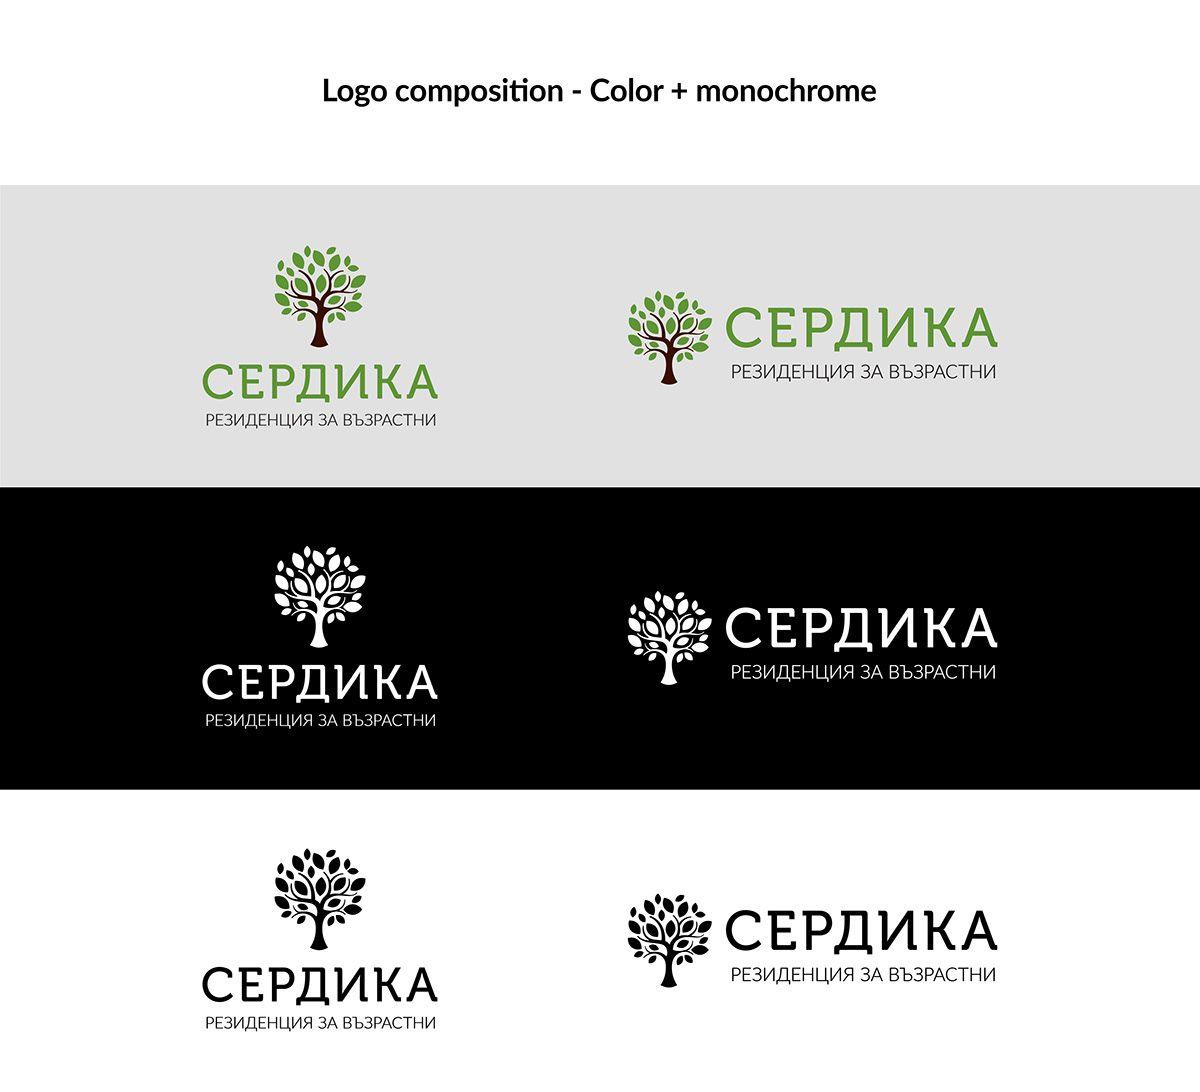 Elderly Logo - Serdika - Residence for the elderly; logo & branding on Behance